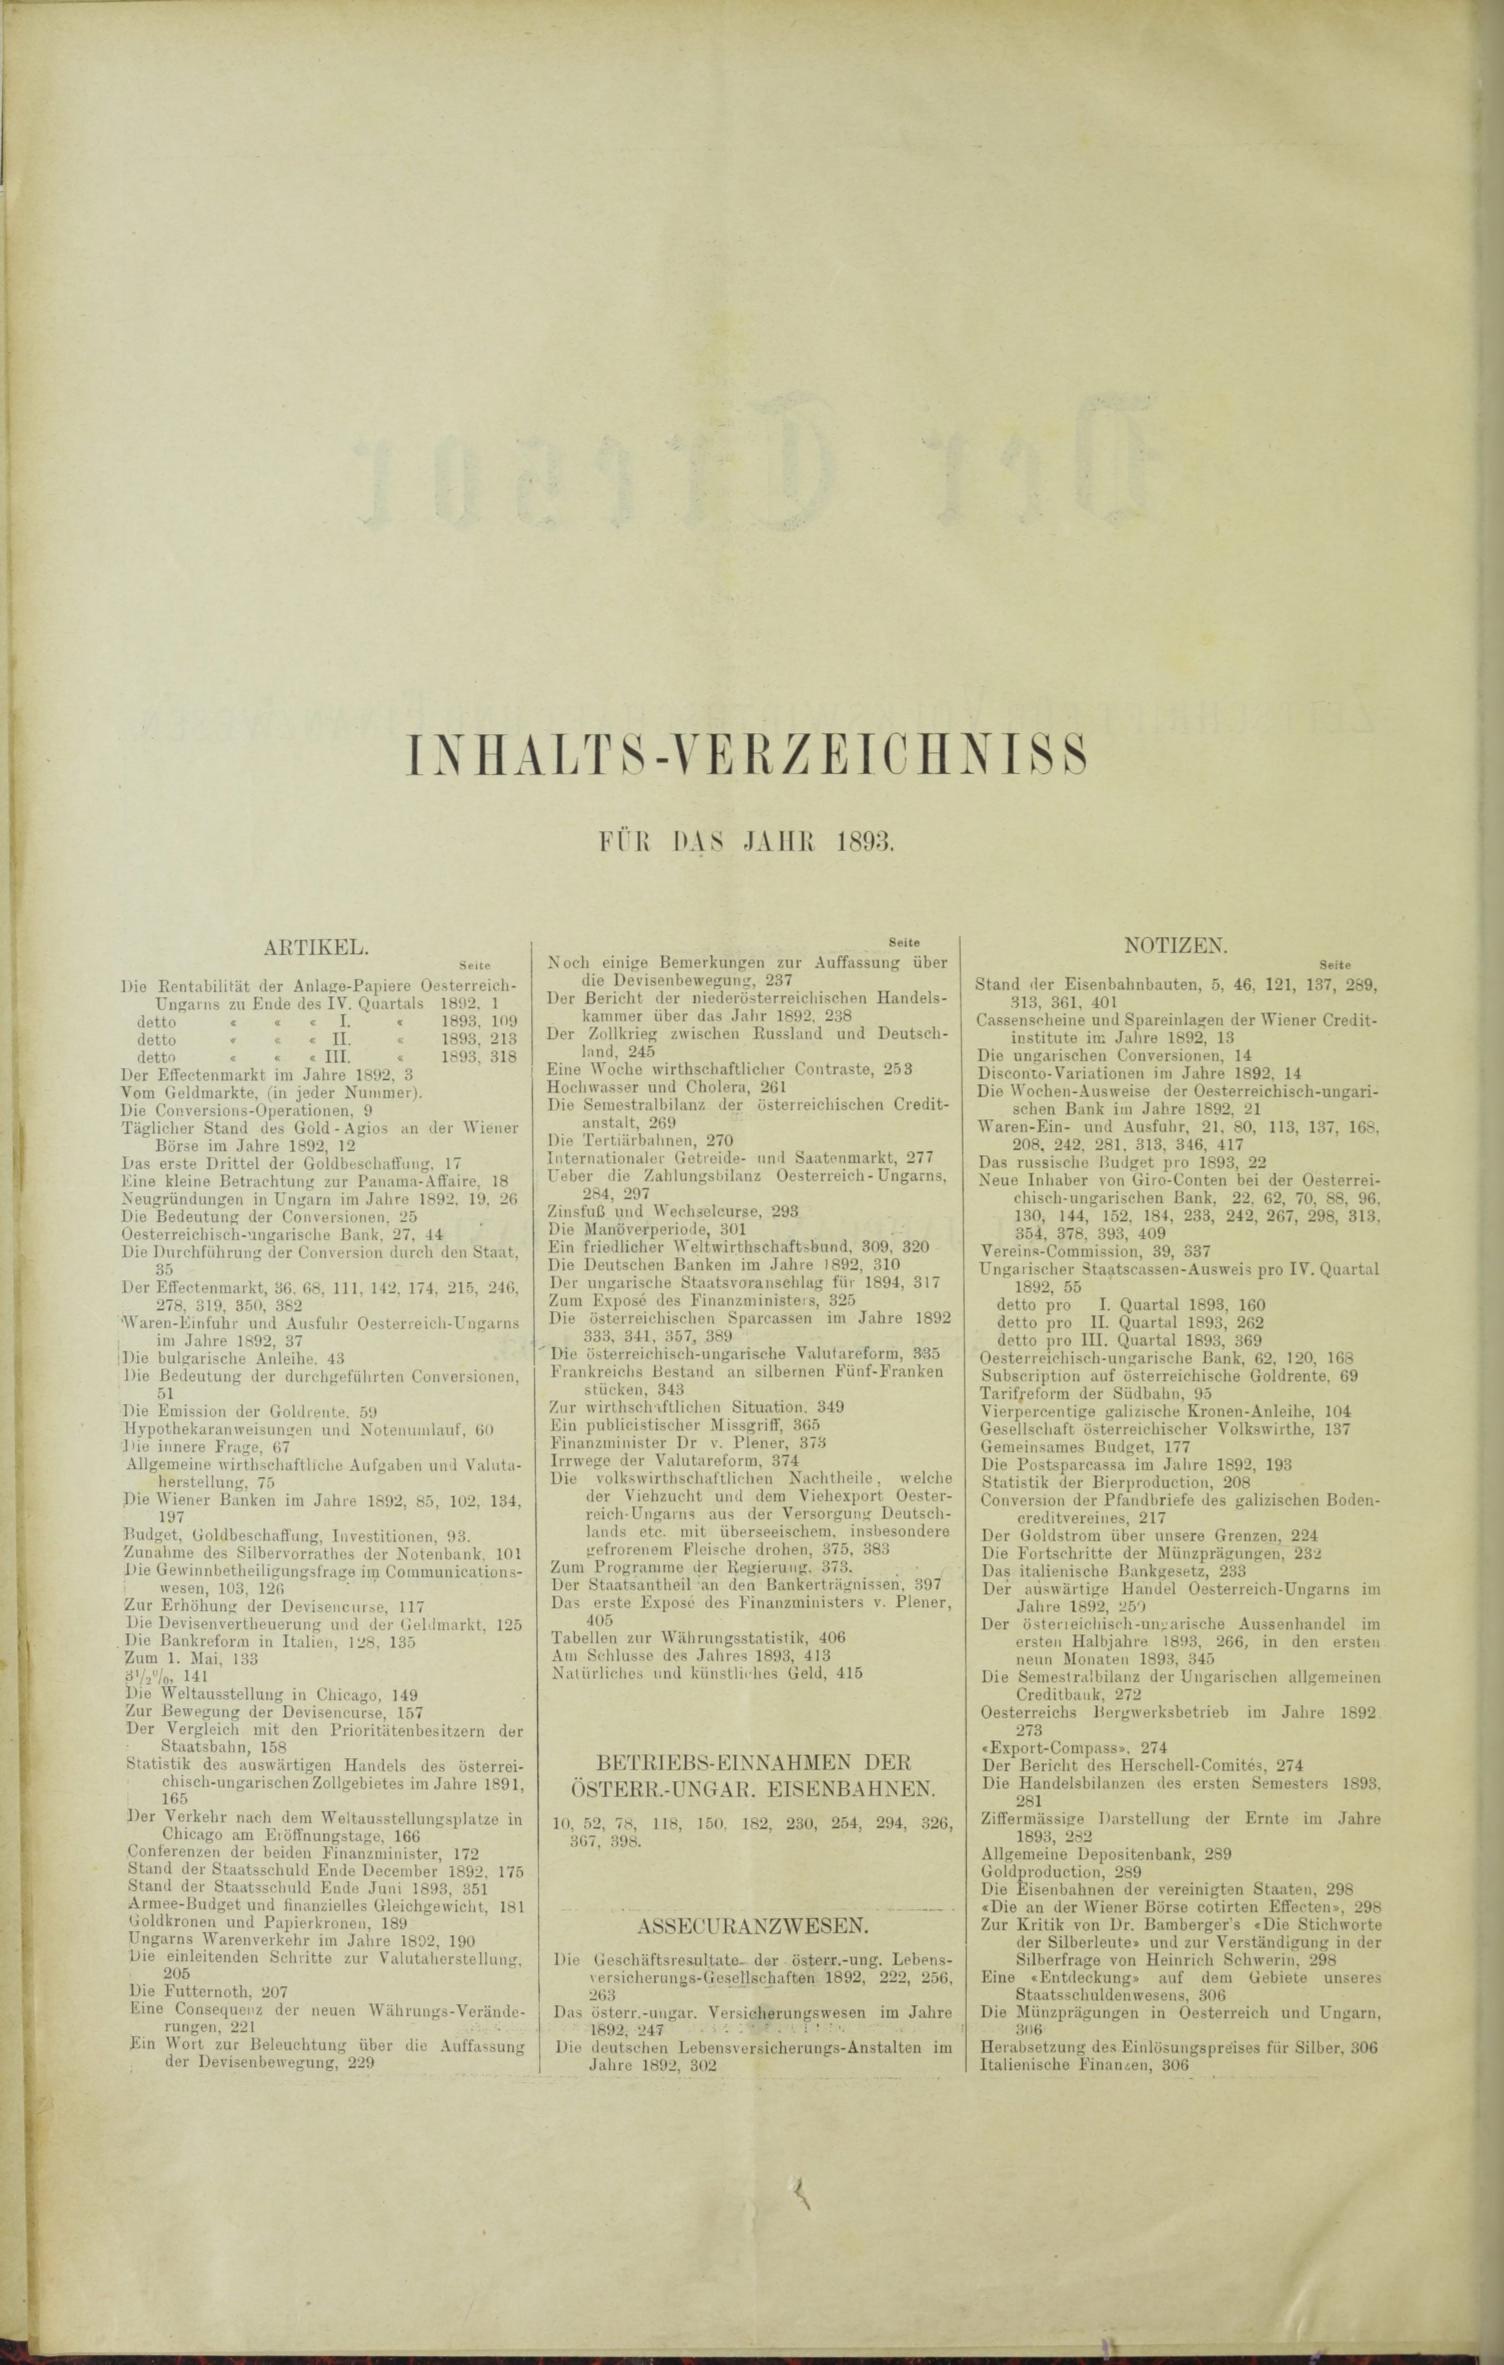 Der Tresor 19.01.1893 - Seite 10